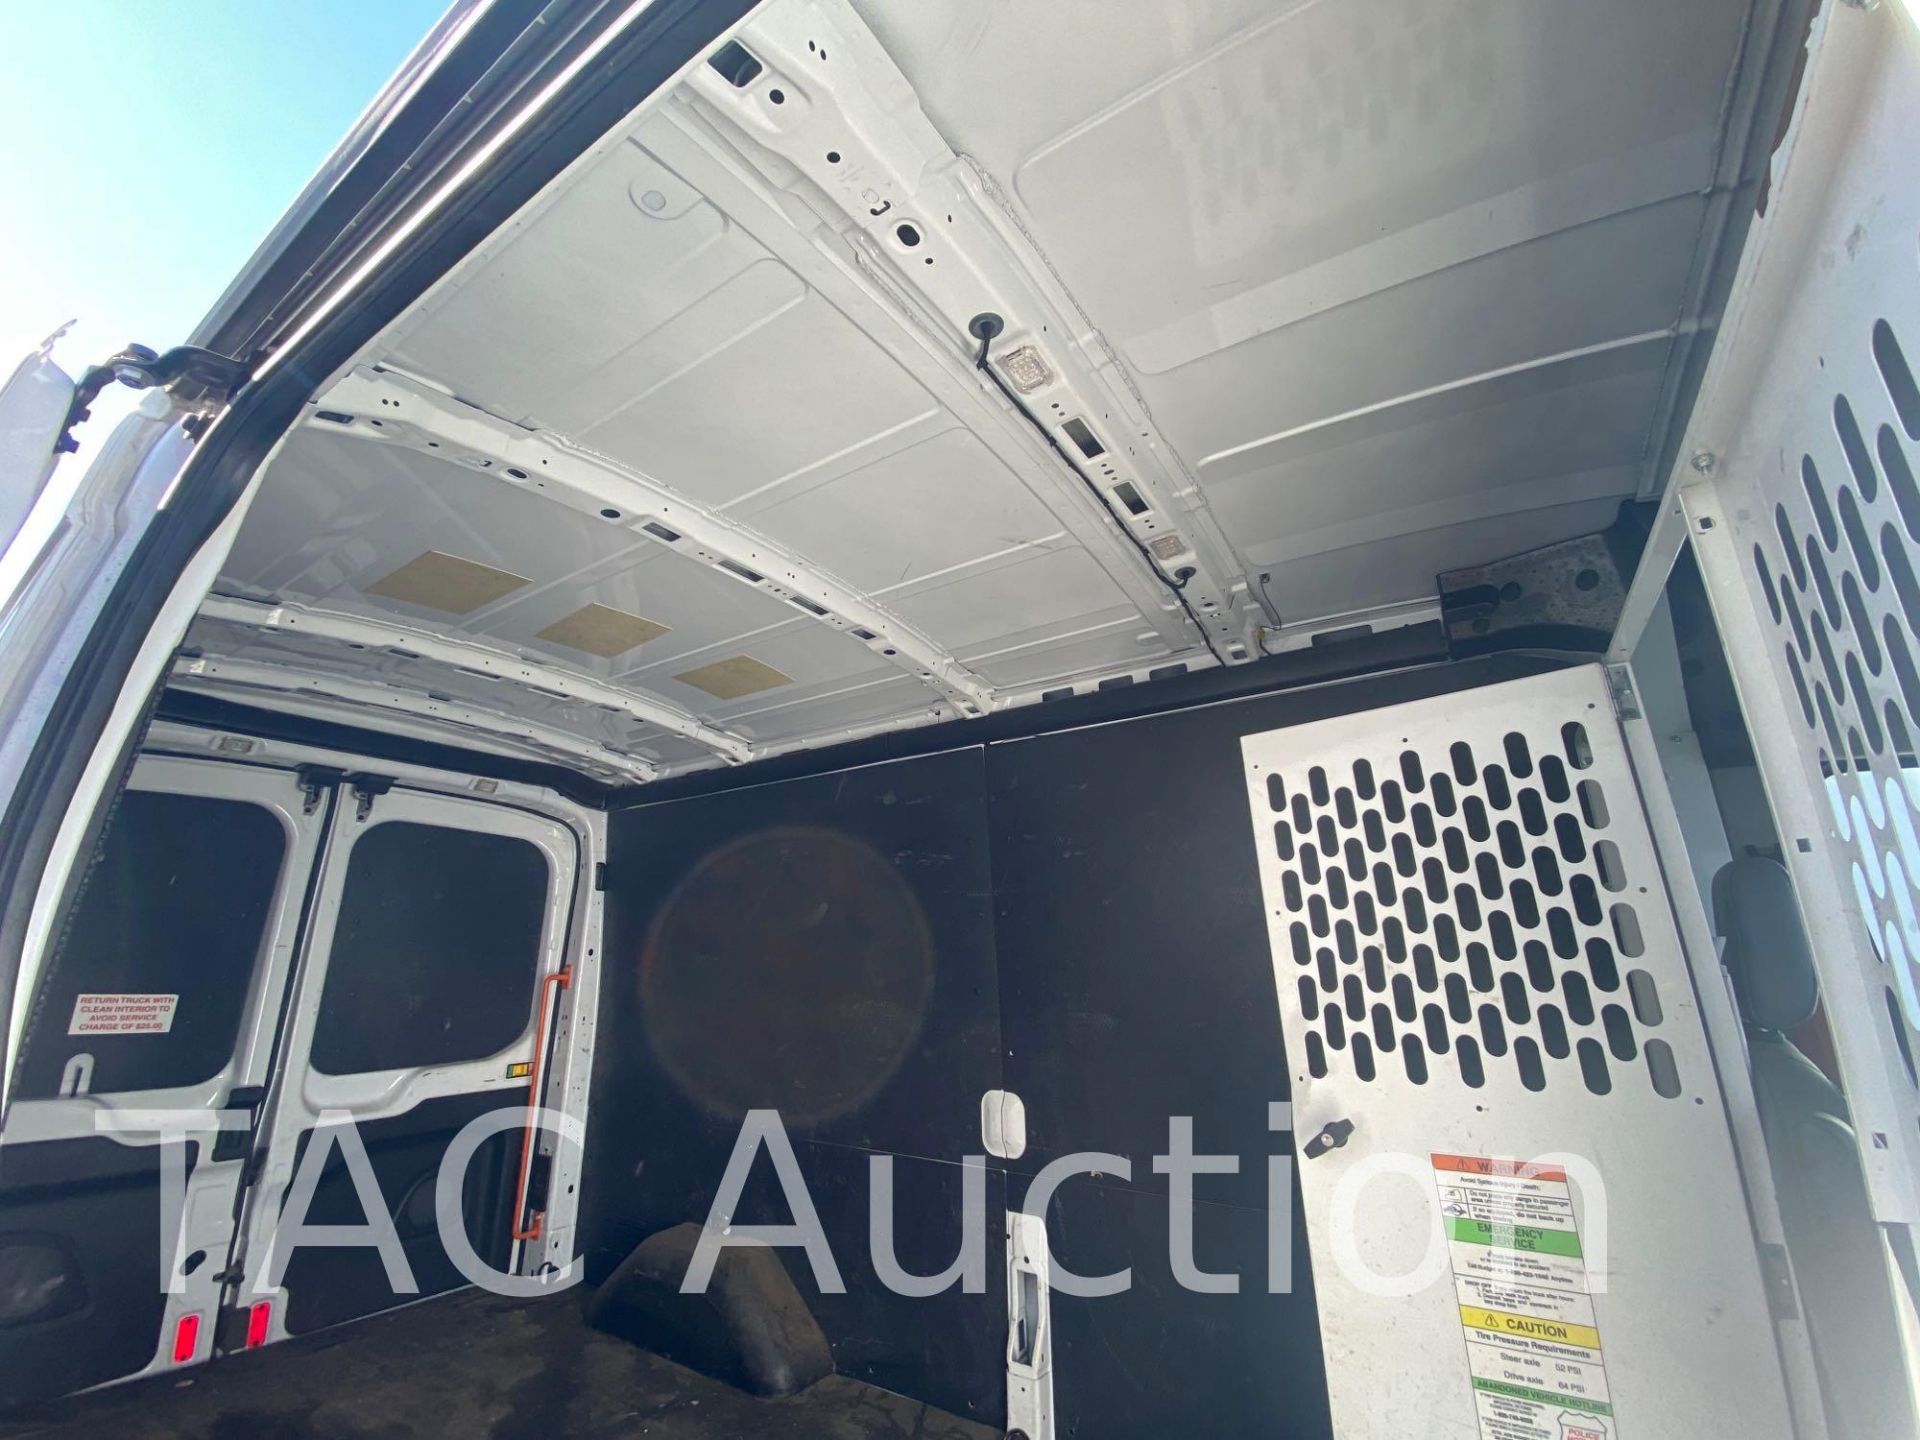 2019 Ford Transit 150 Cargo Van - Image 10 of 81